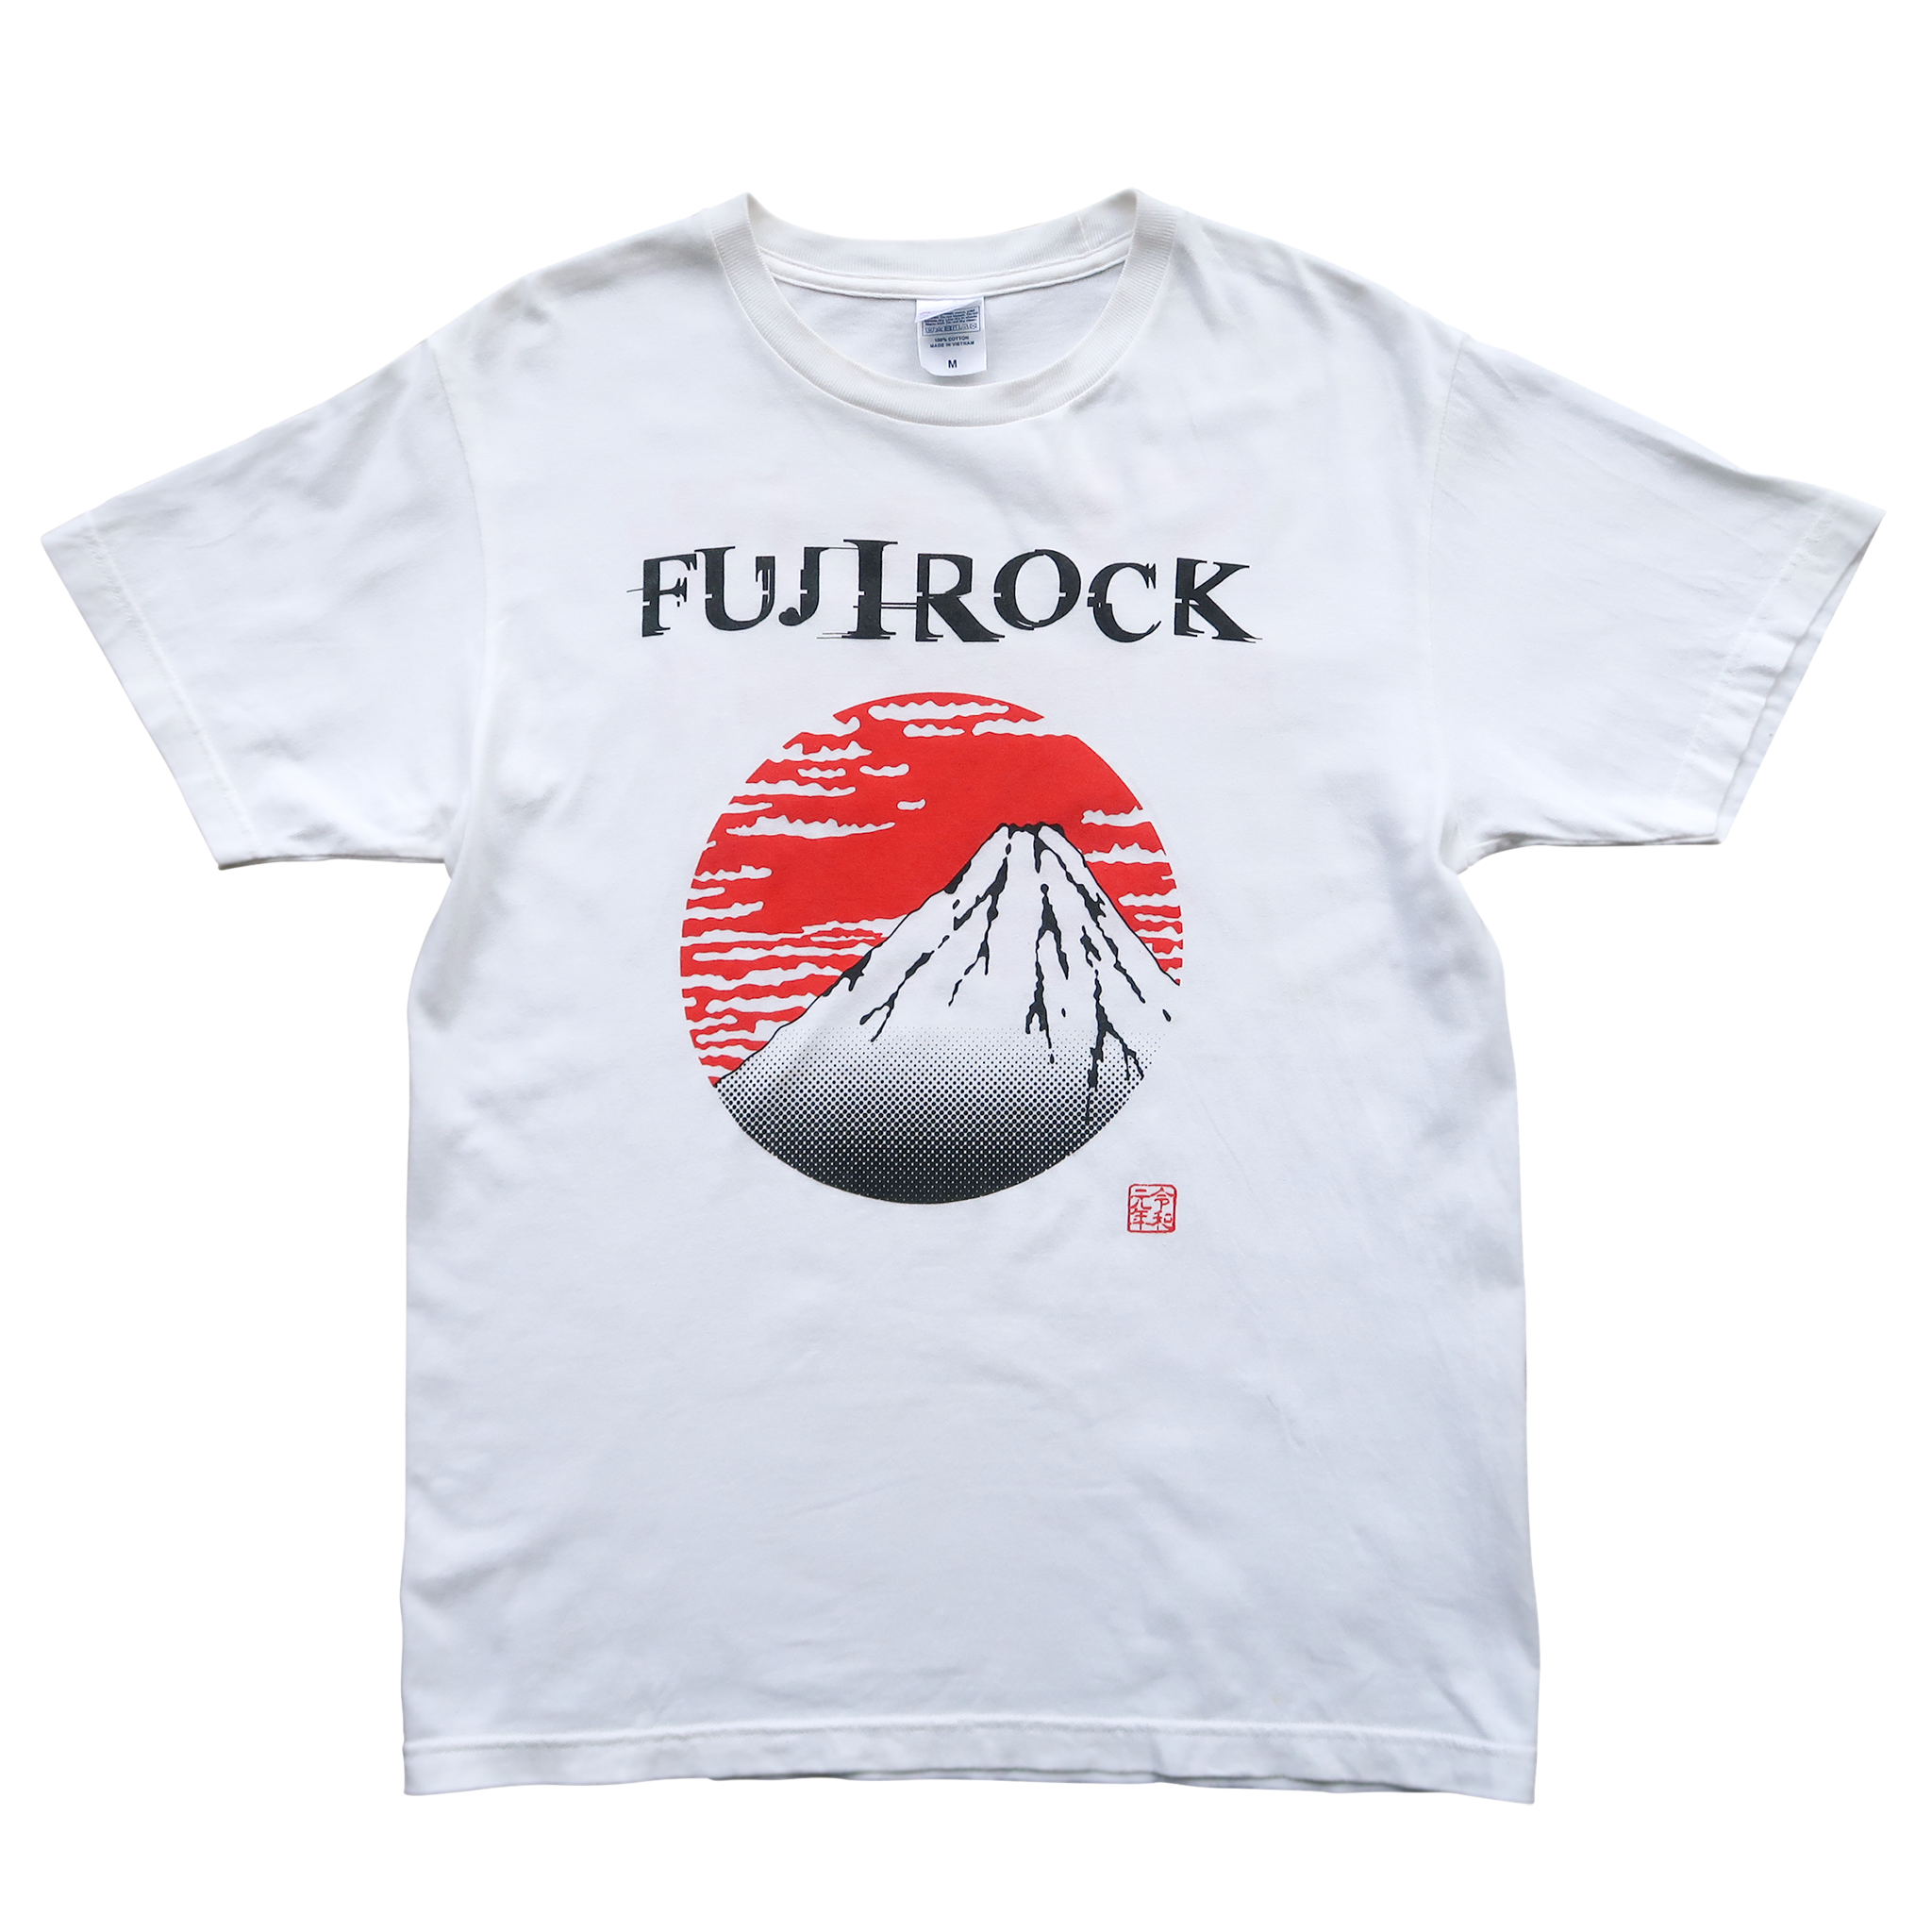 Fuji Rock Festival '19 Staff T-Shirt